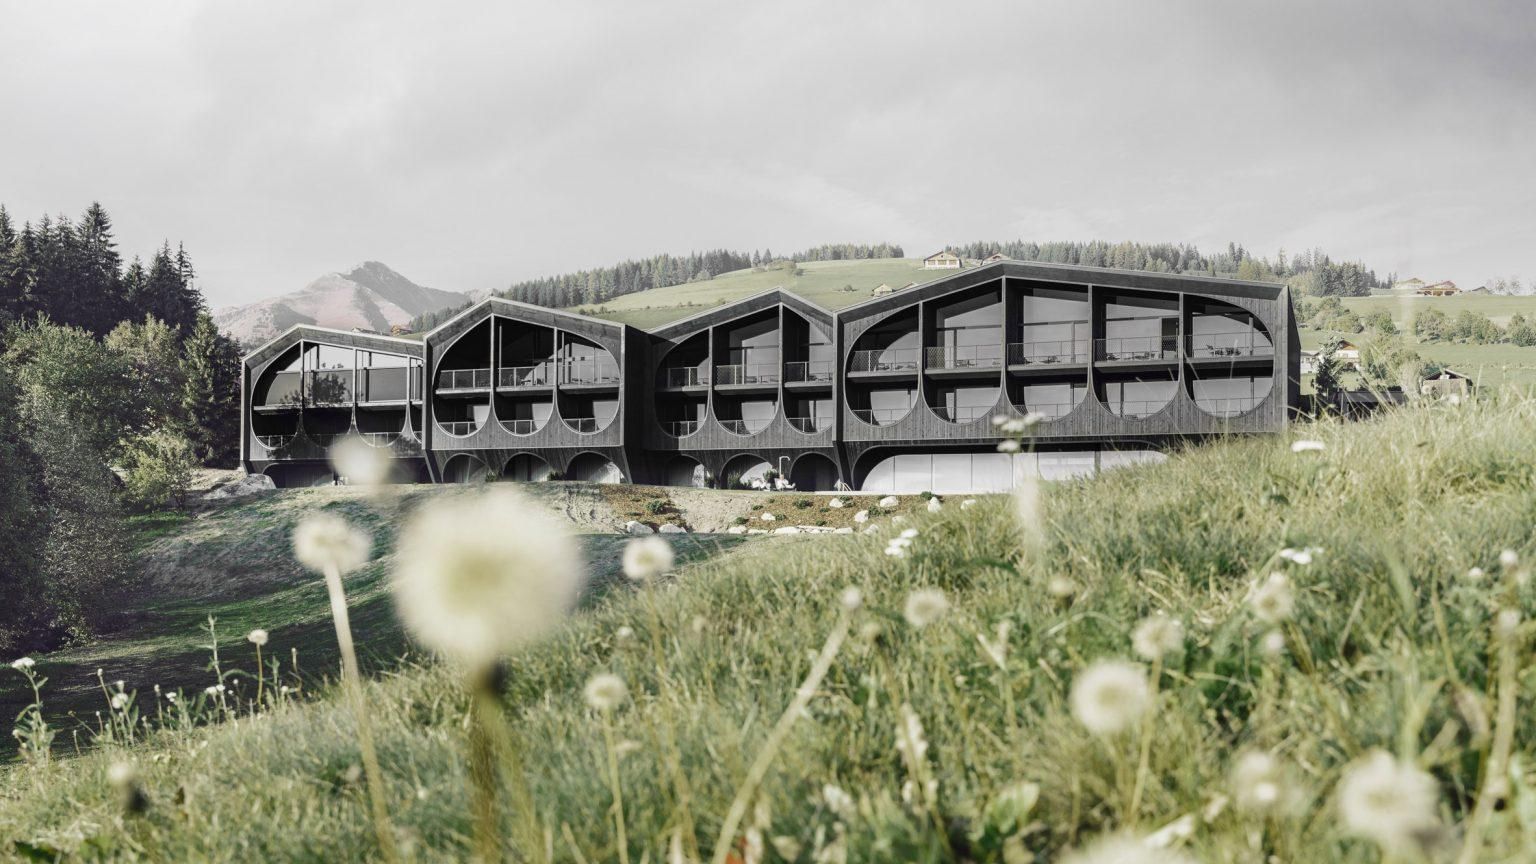 Аграрная архитектура: в Италии построили отель с мотивами сельского хозяйства – фото